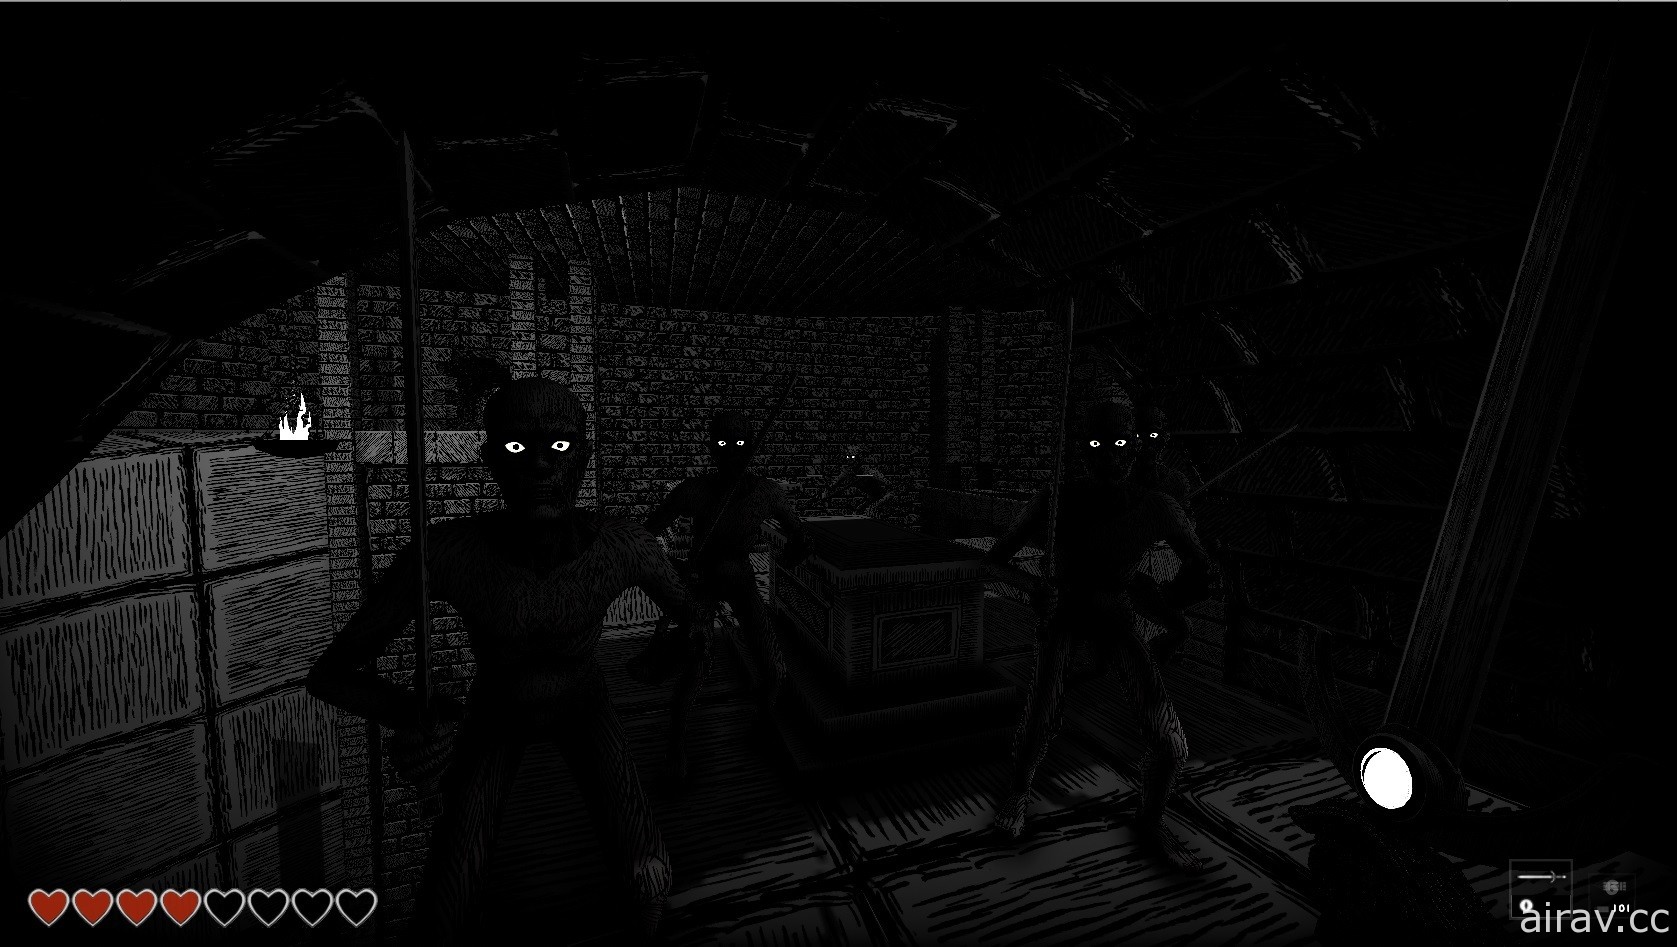 FPS 恐怖游戏《亡者国度》今日在 Steam 上市 起身对抗亡者大军